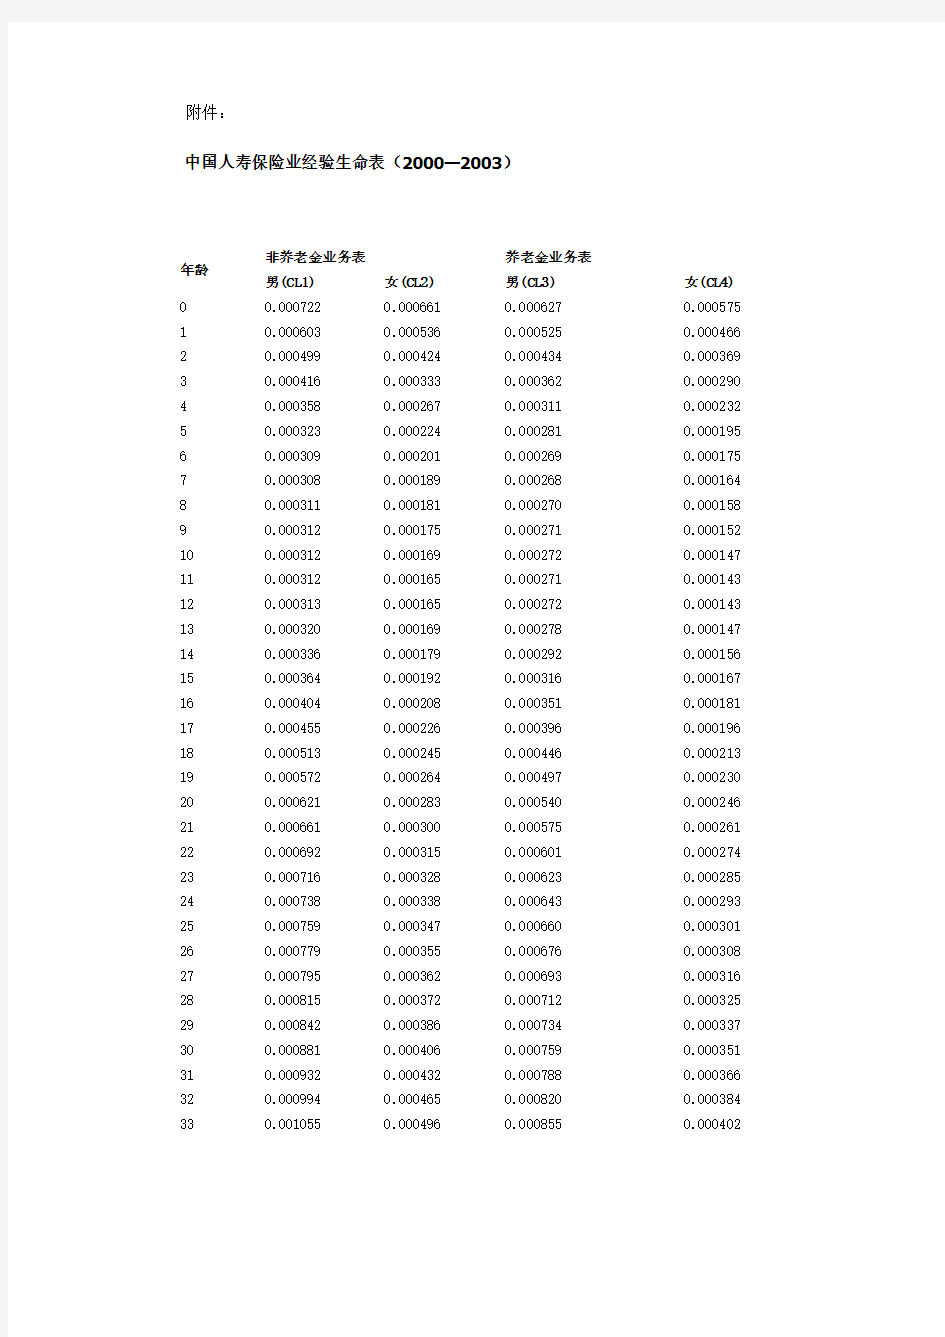 中国人寿保险业经验生命表(2000～2003)